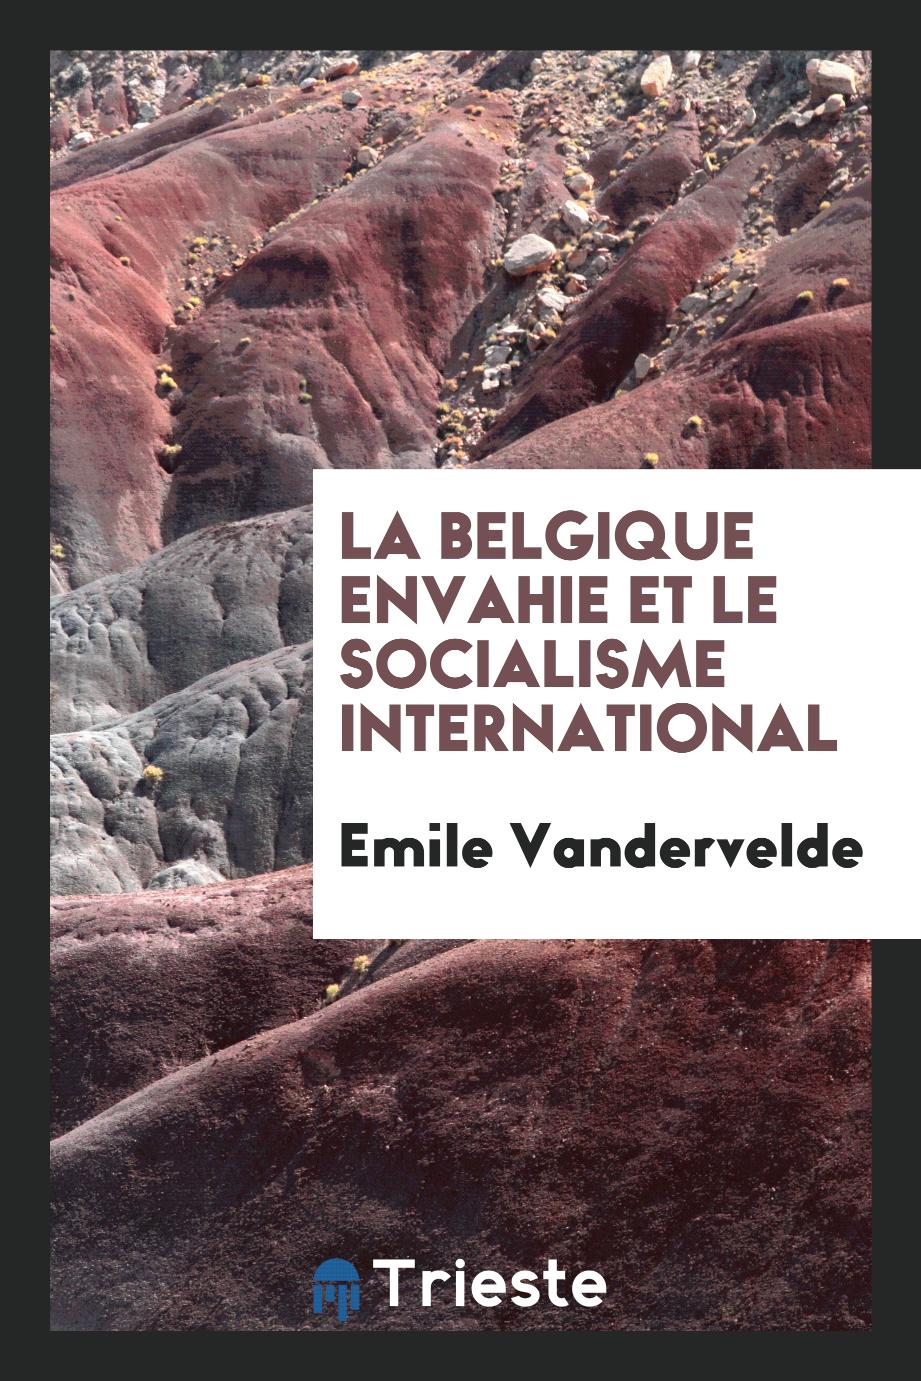 La Belgique envahie et le socialisme international